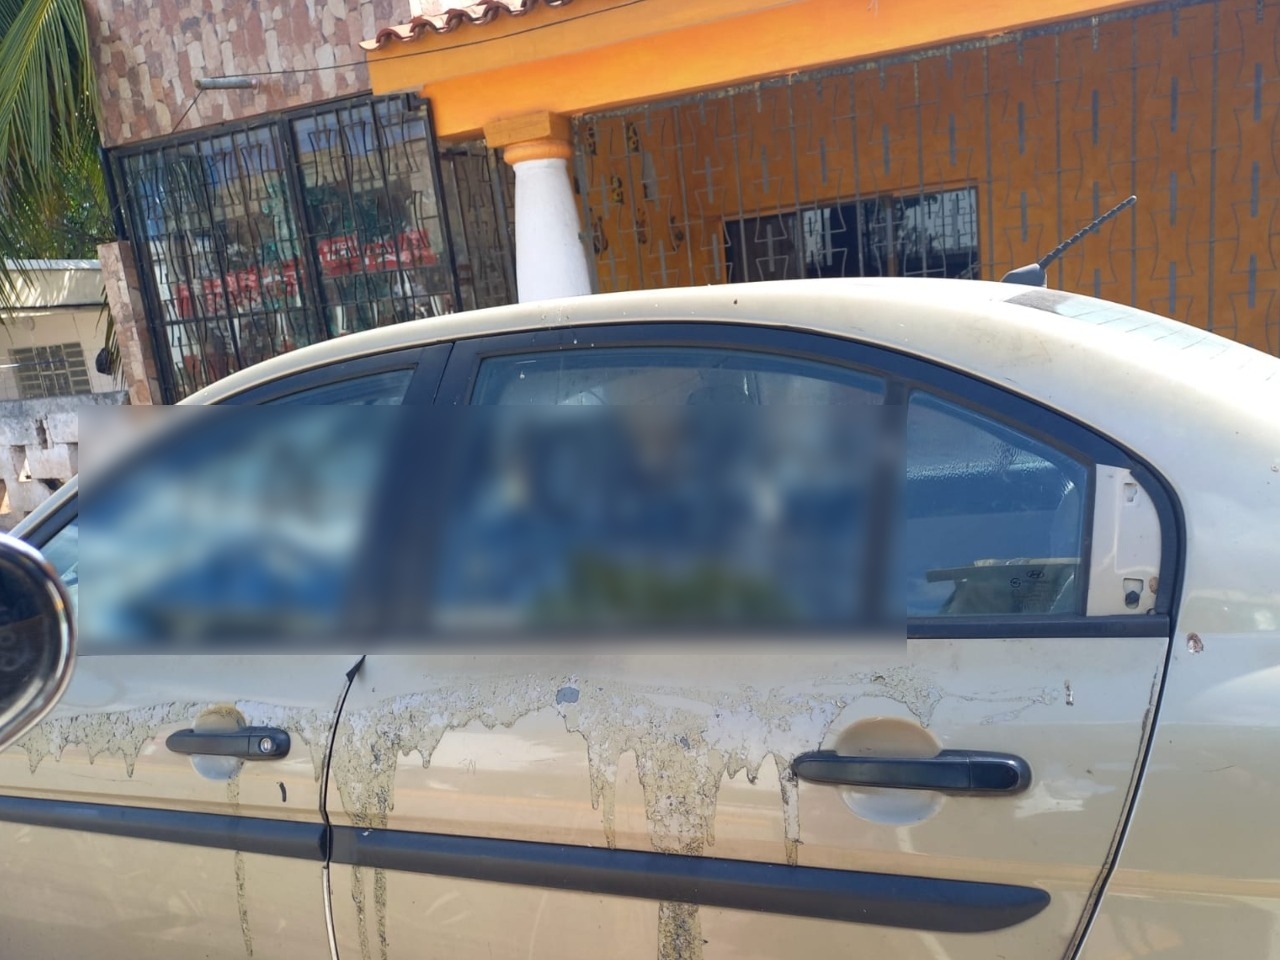 El coche fue retirado de la avenida principal de José María Morelos luego de que se reportara la aparición de un mensaje amenazador en sus cristales